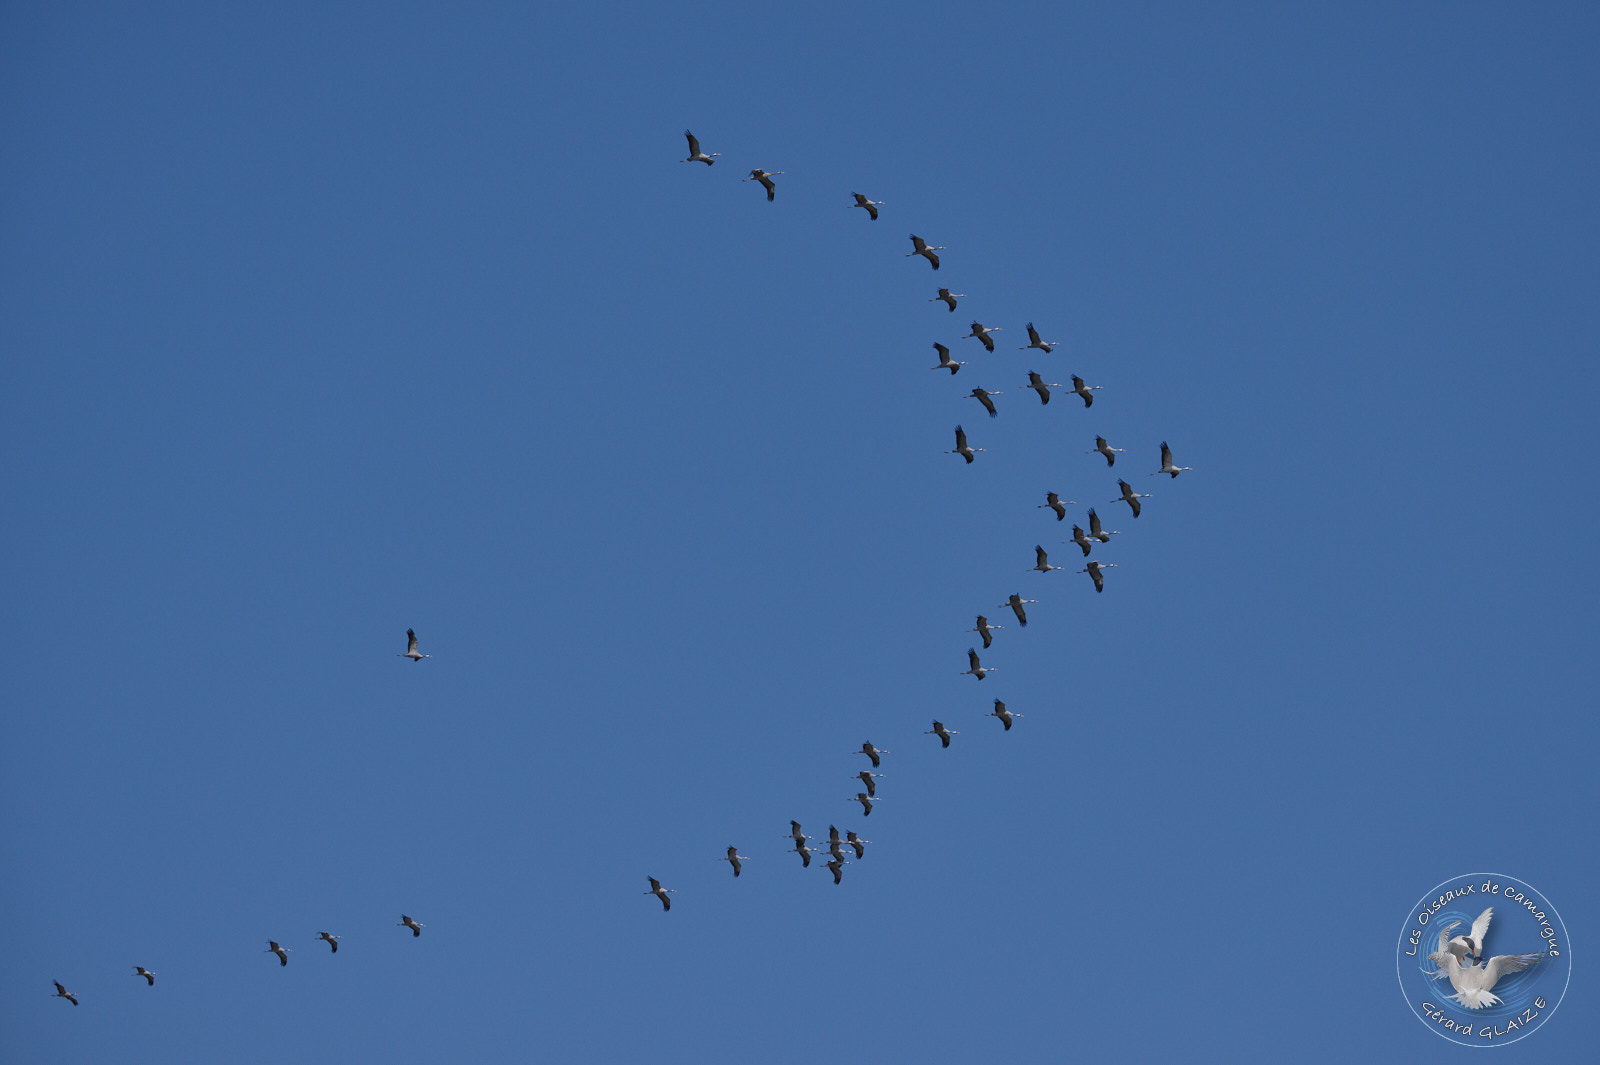 Grues cendrées - Common Cranes